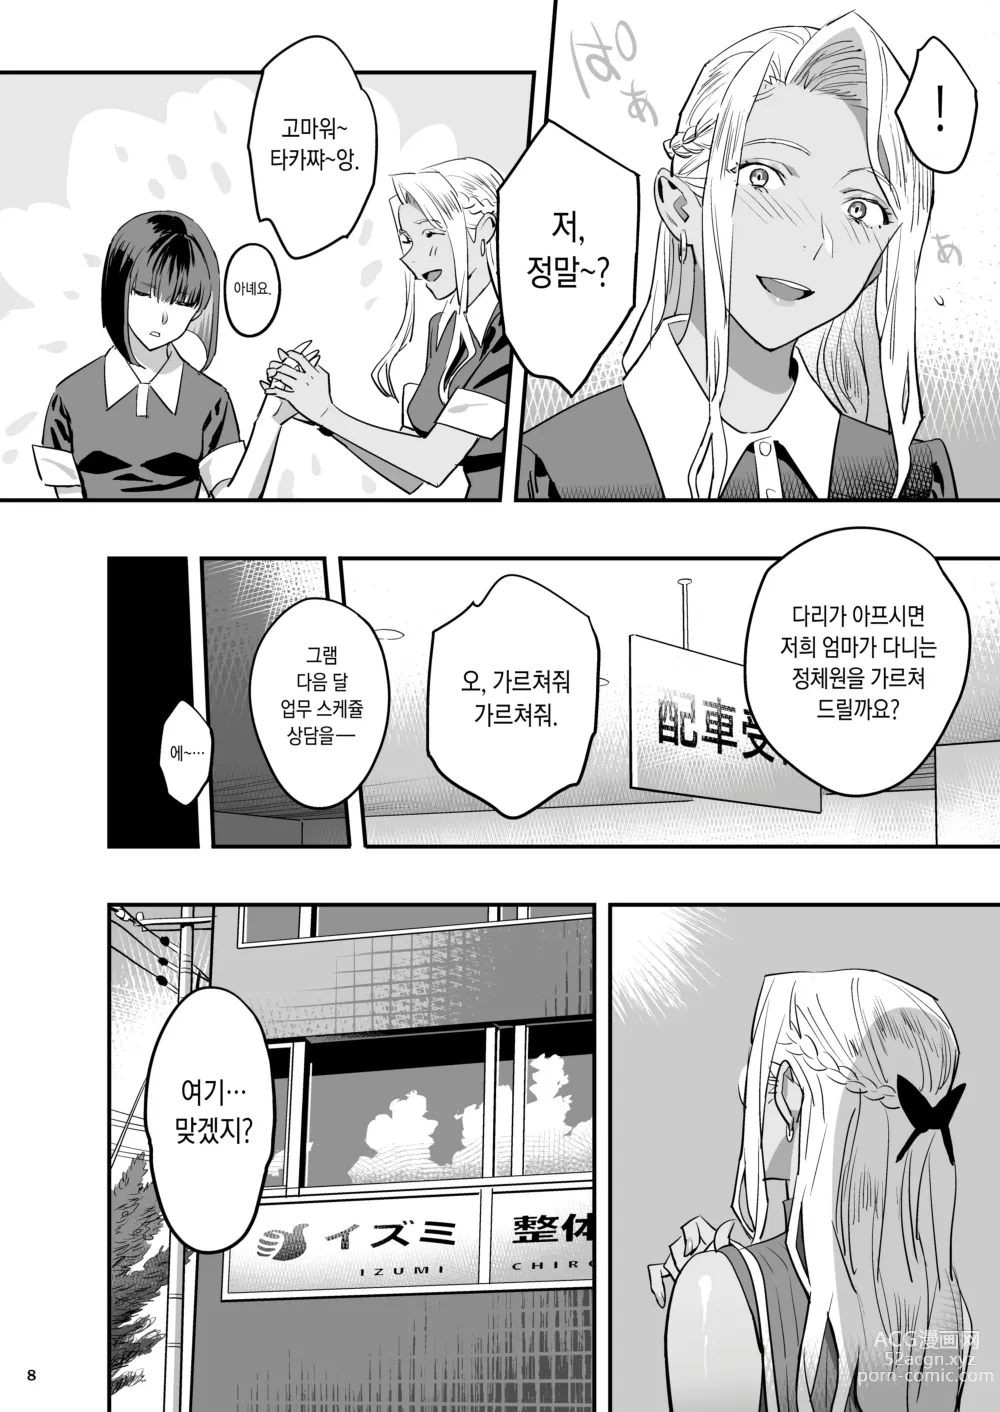 Page 5 of doujinshi 내가 먼저 좋아했는데 정체.